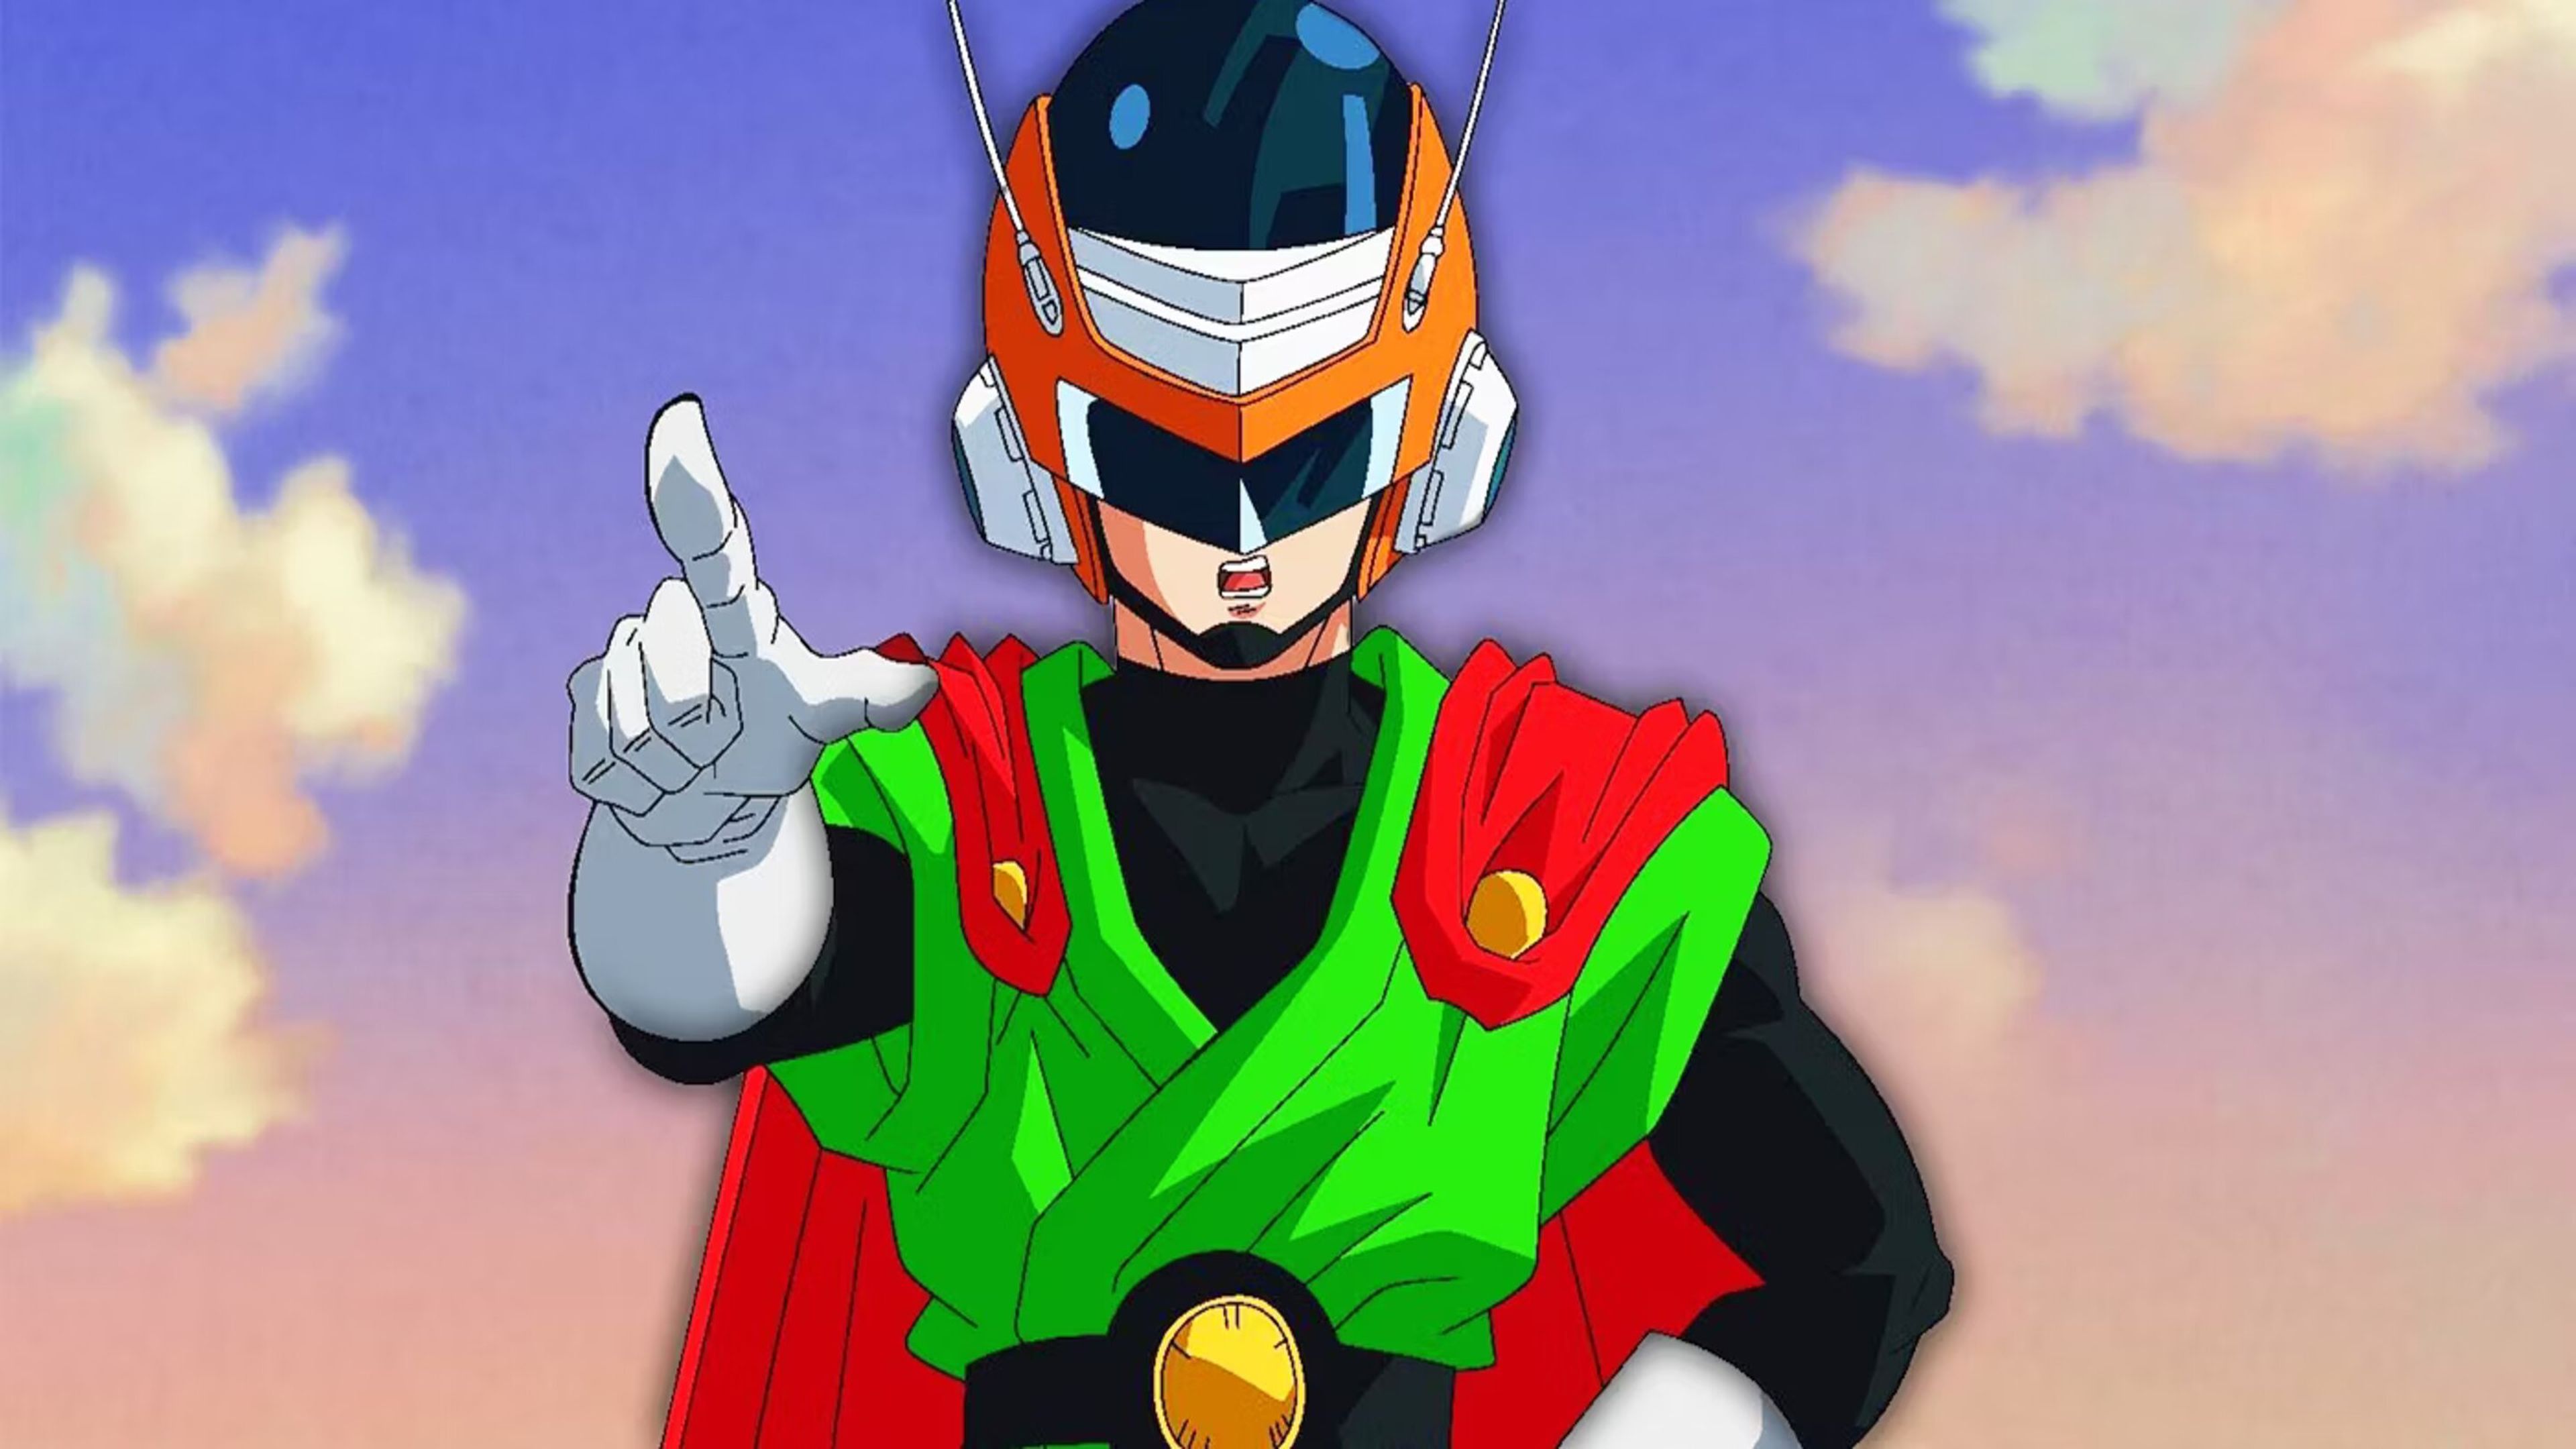 Dragon Ball Super: Super Hero - Así se vería Gohan en la película con el traje de Gran Saiyaman. ¿Mejor o peor que el acabado final?